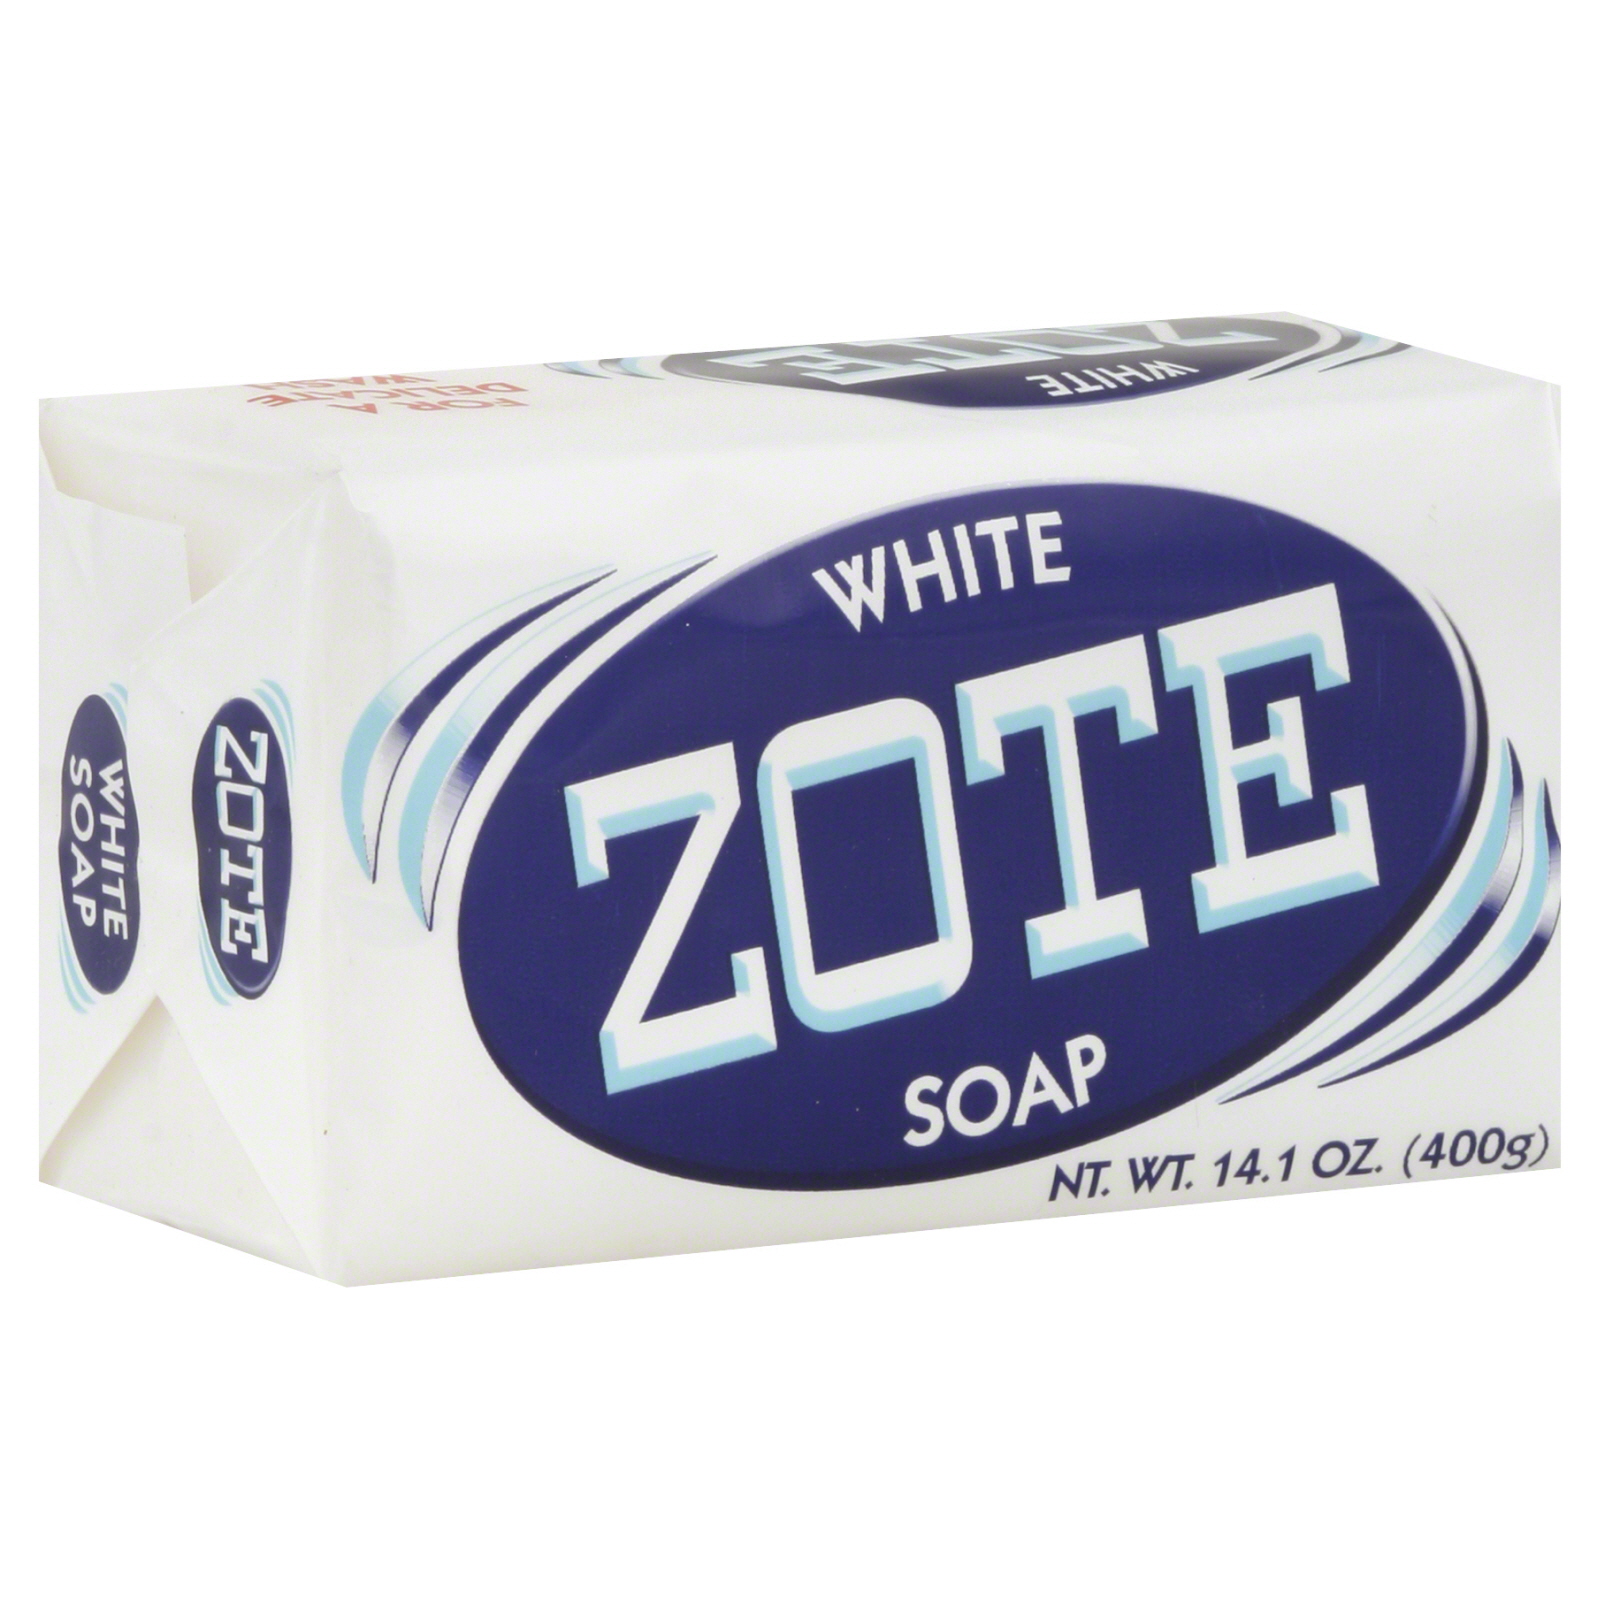 Zote Laundry Soap Bar, White, 14.1 oz (400 g)